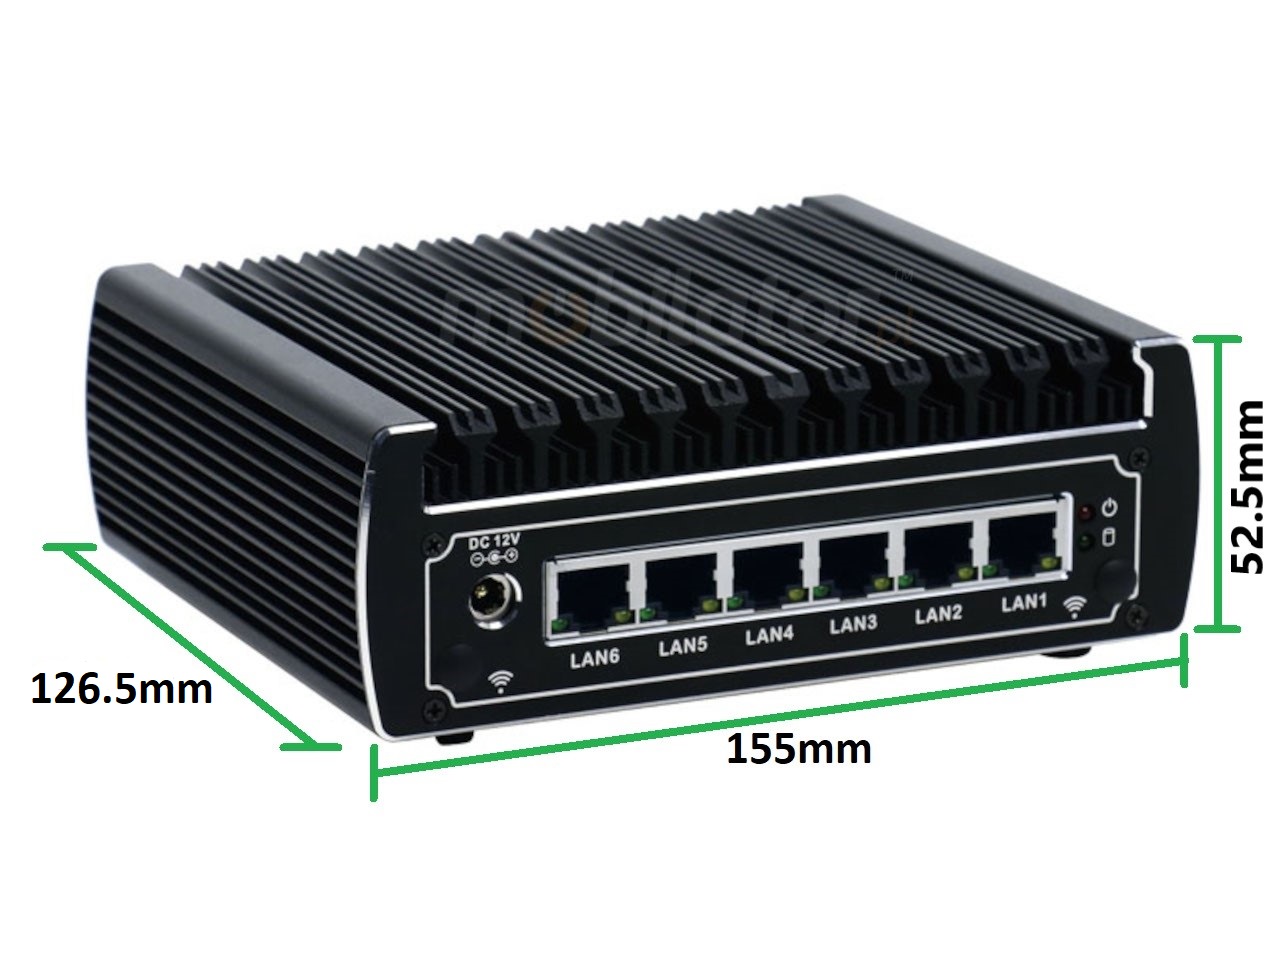   IBOX N133  v.12, wymiary SSD DDR4 WIFI BLUETOOTH , przemysłowy, mały, szybki, niezawodny, fanless, industrial, small, LAN, INTEL i3